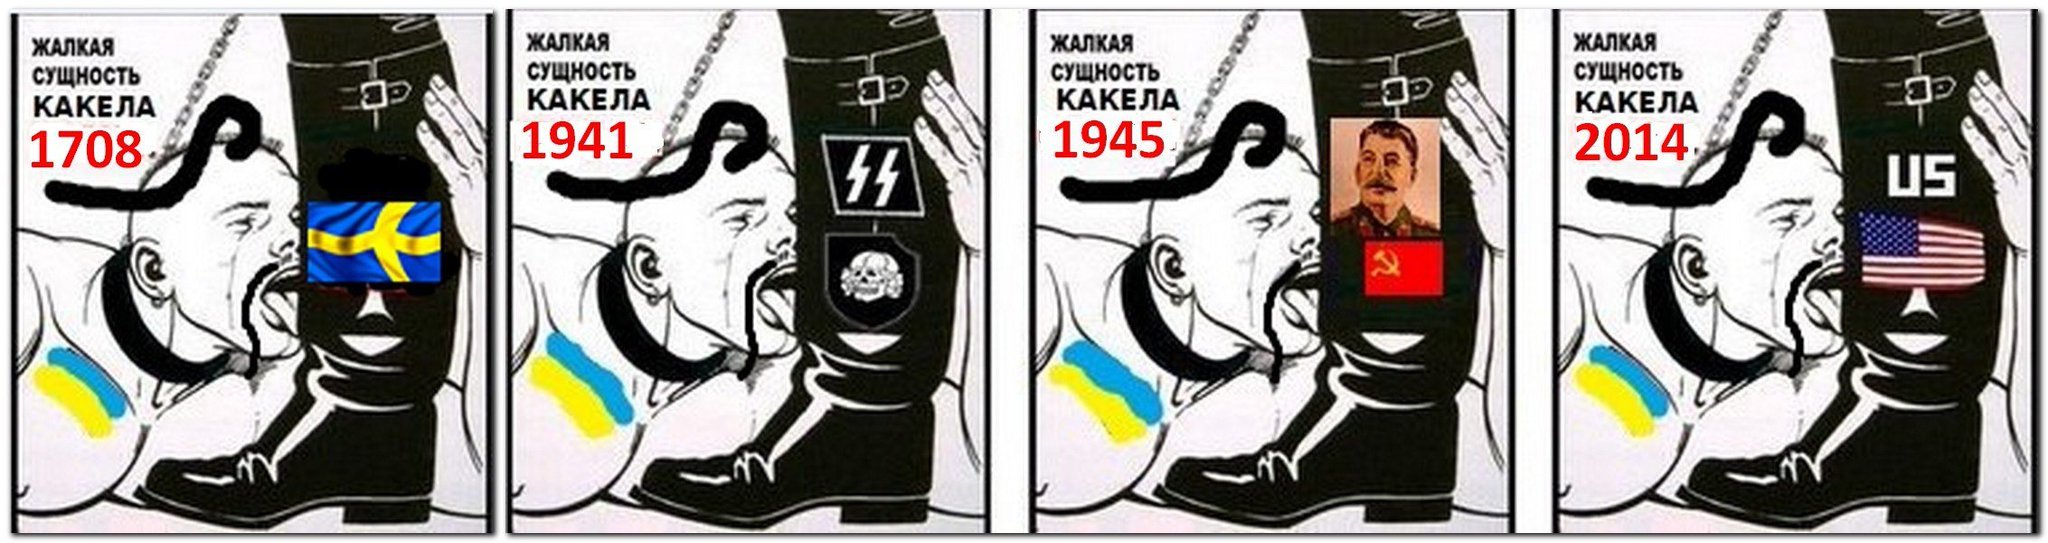 Почему медлим с украиной. Карикатуры на бандеровцев и националистов. Хохлы карикатуры. Американец и бандеровец карикатура.